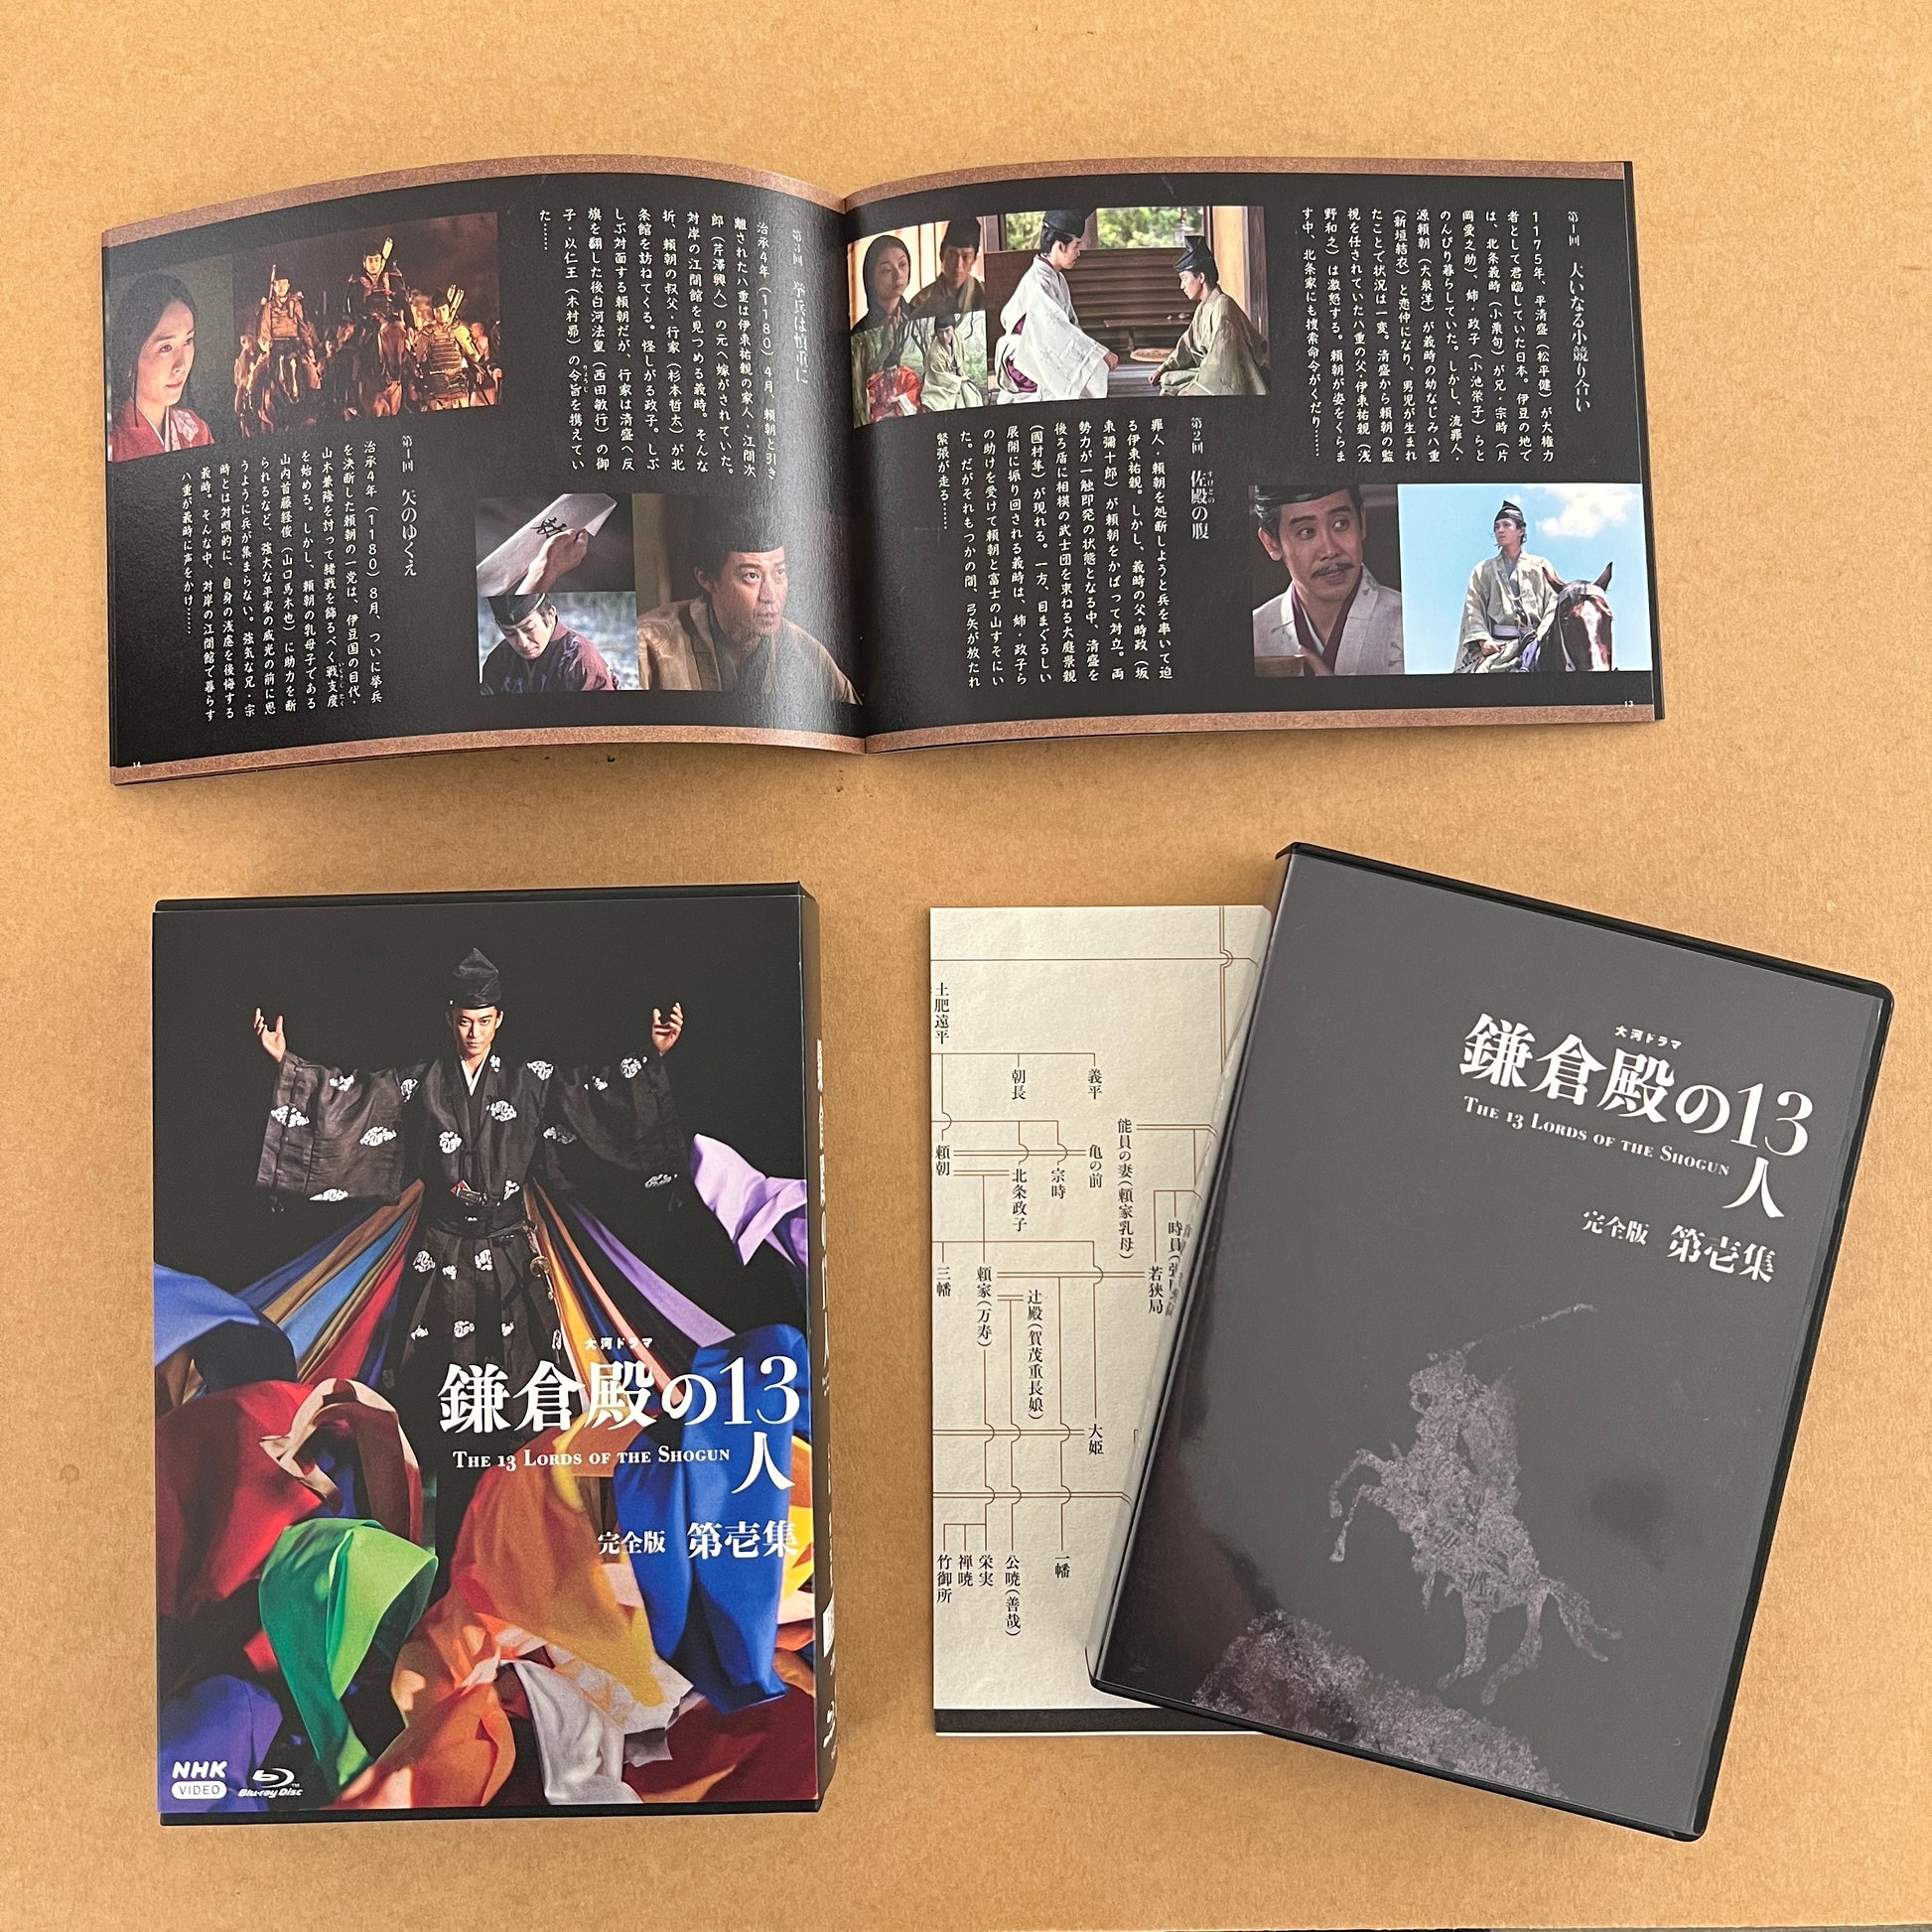 鎌倉殿の13人 完全版 第壱集 ブルーレイBOX - NHKグループ公式通販 ...